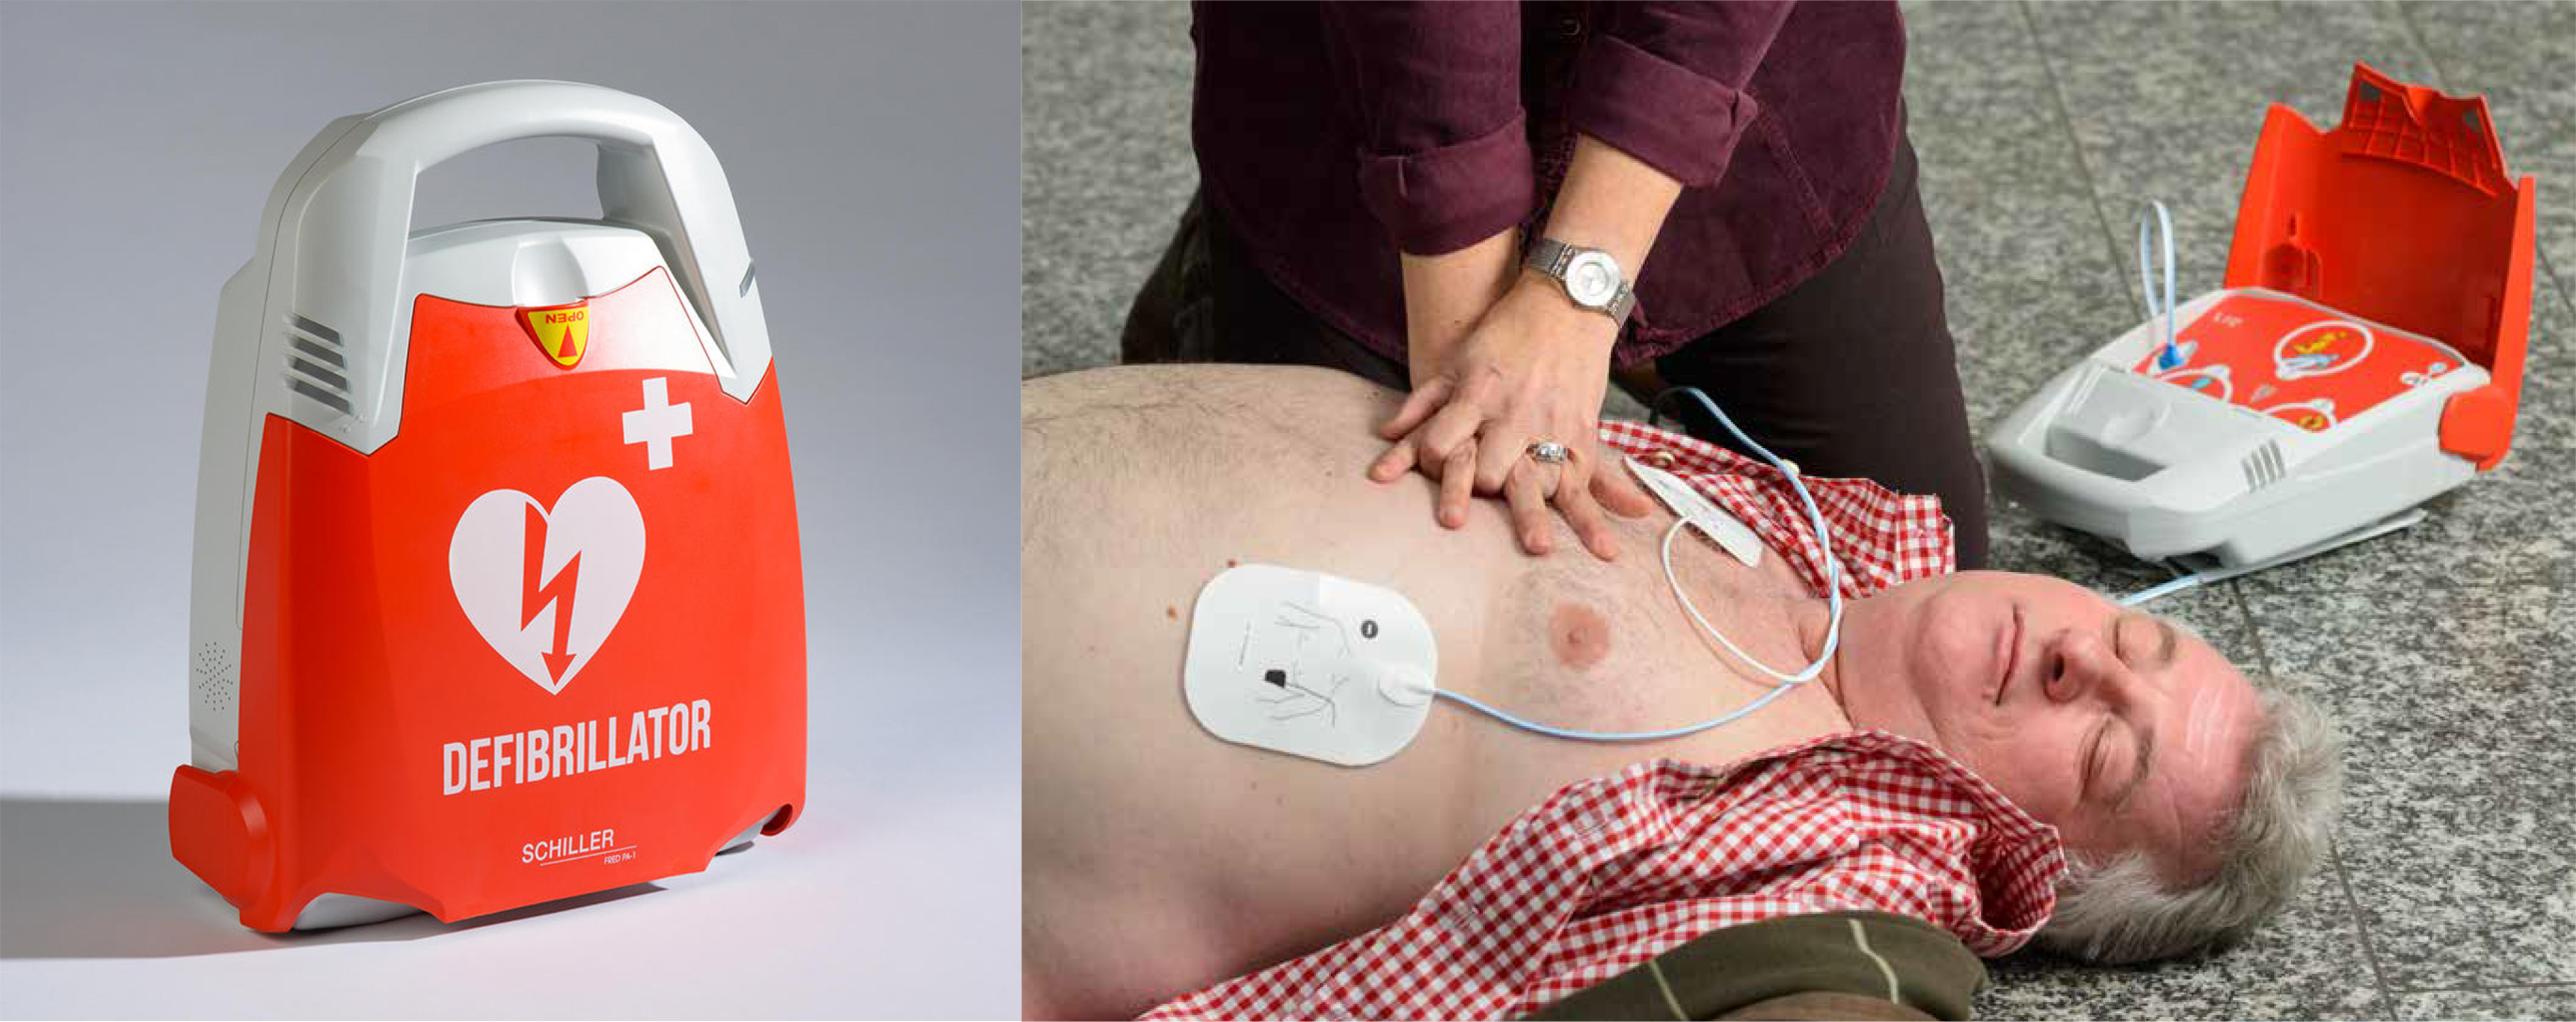 Toutes les questions que vous vous posez sur le Défibrillateur plus Vidéo:  Quand, Qui peut, Comment,  utiliser le défibrillateur ??? - ASSOCIATION  EDUCNAUTE-INFOS